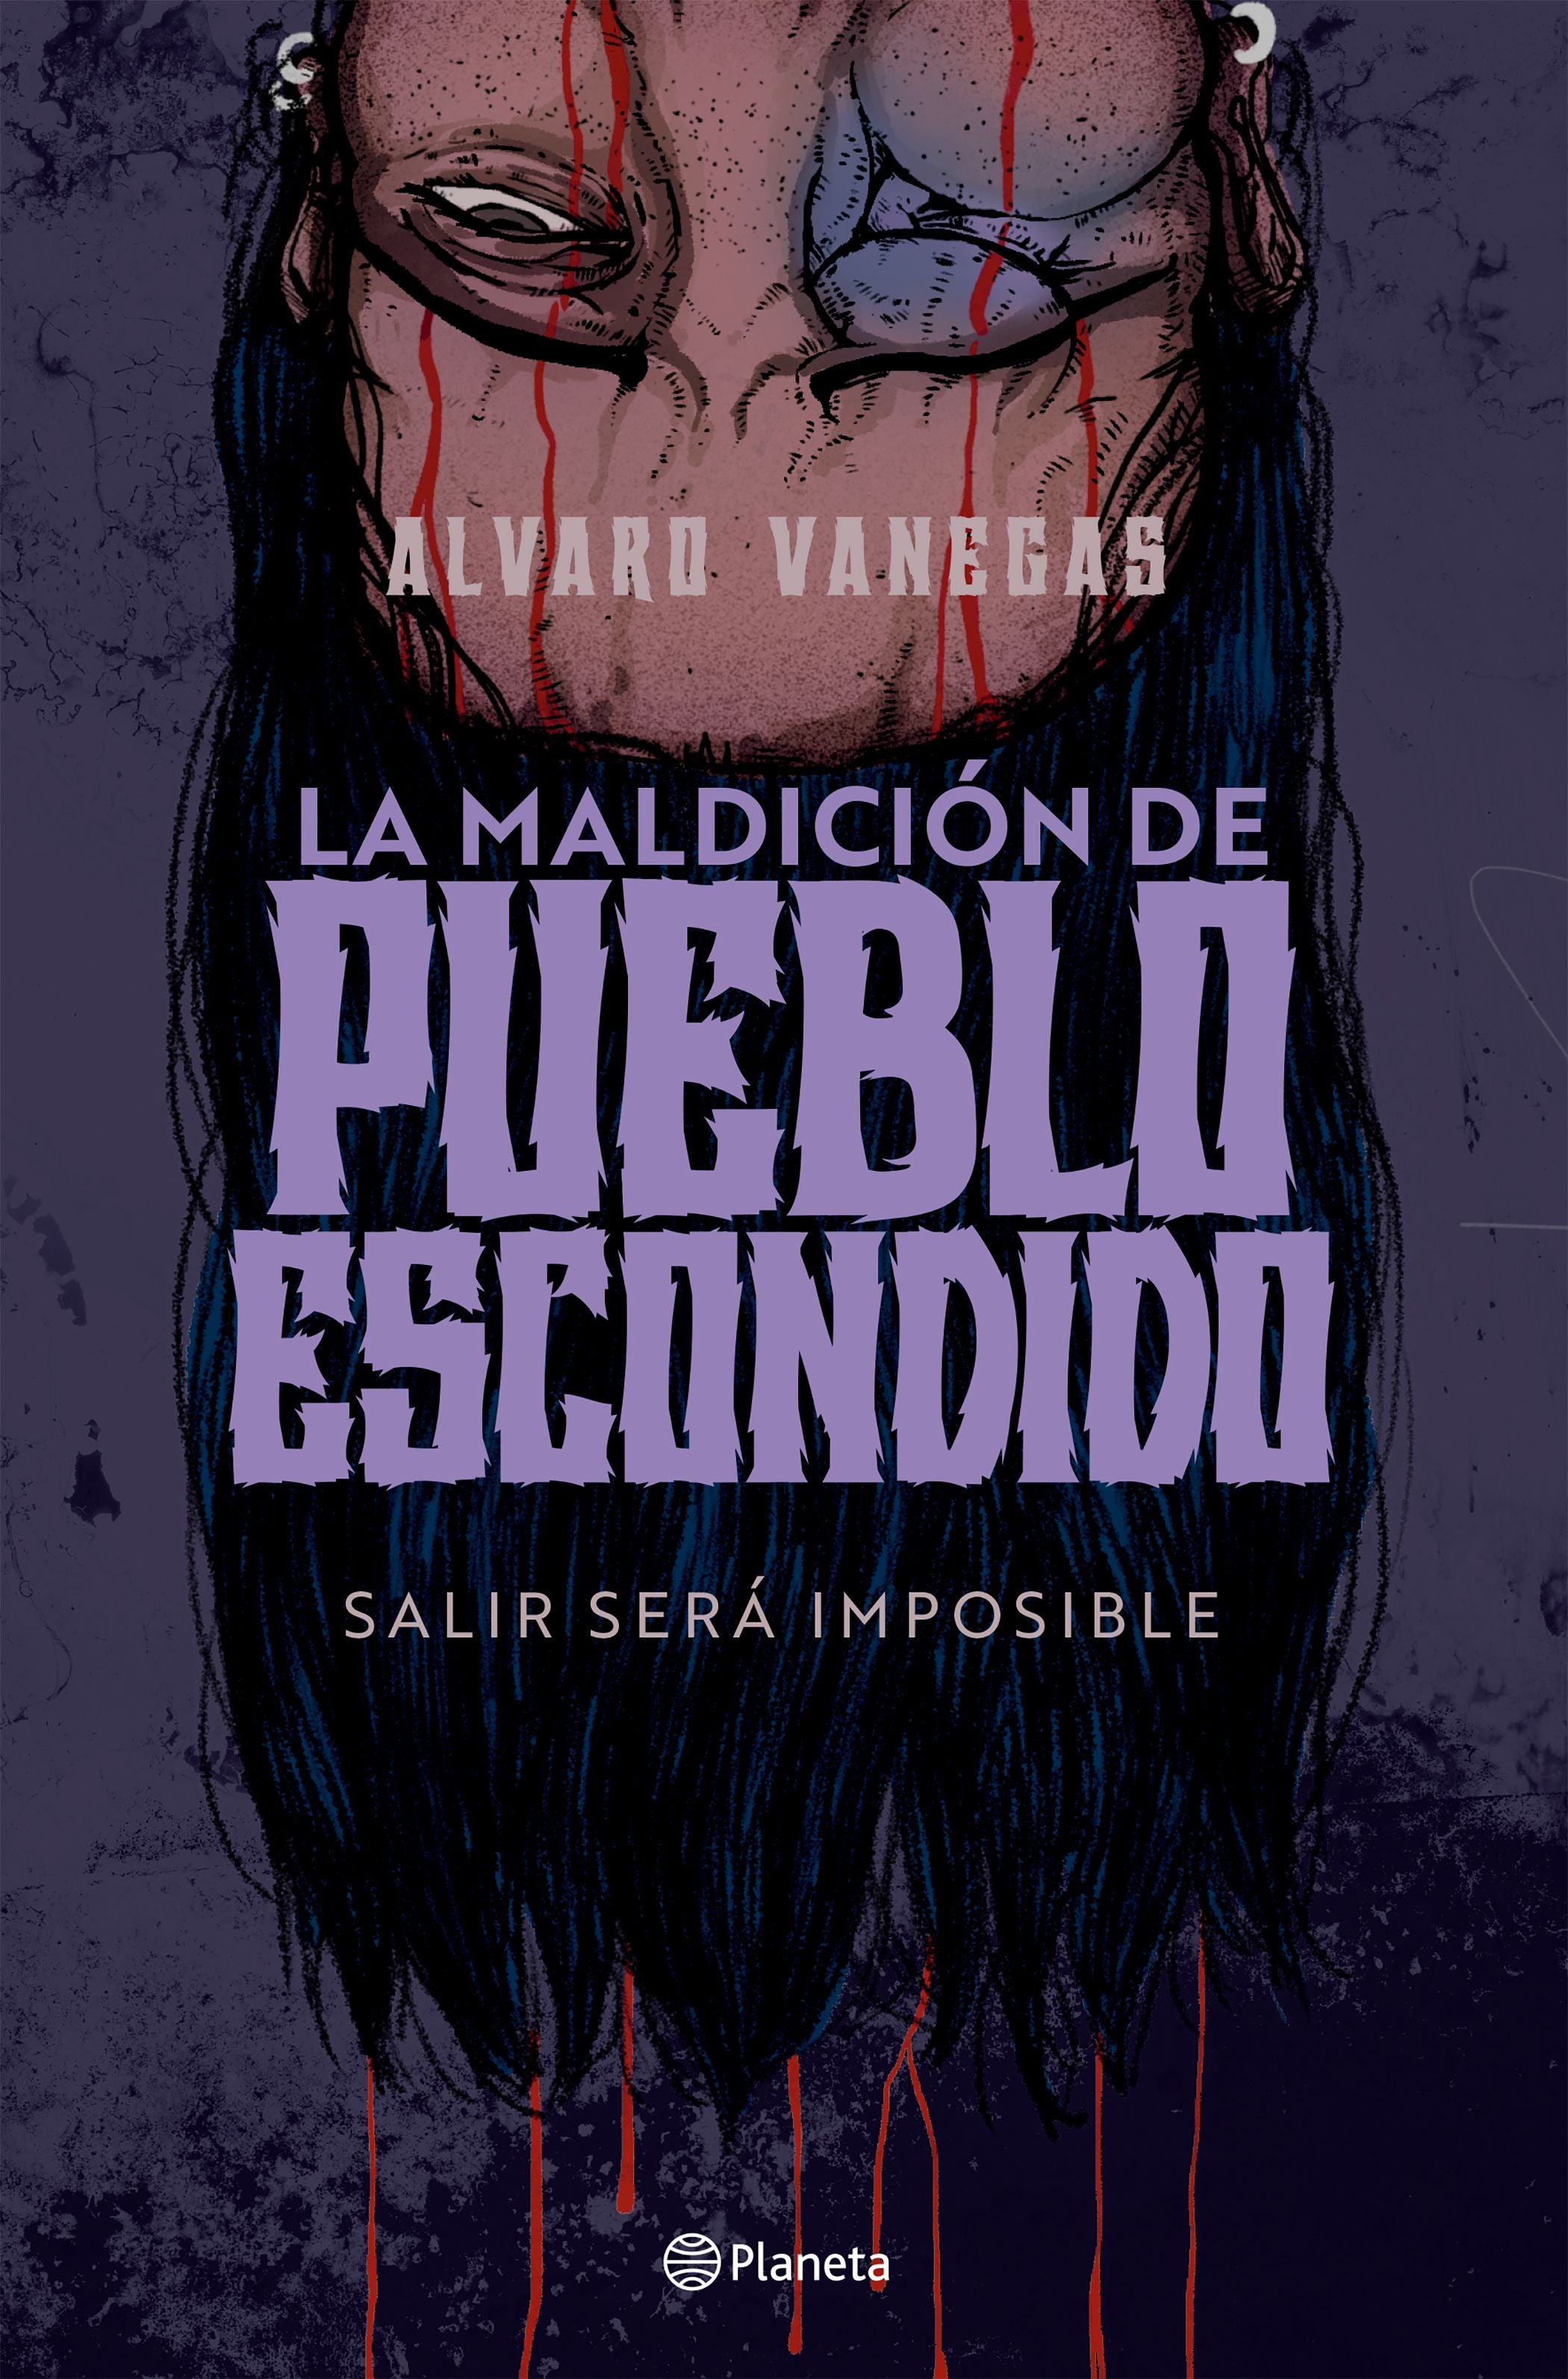 Libro Alvaro Vanegas - La Maldicion de pueblo escondido